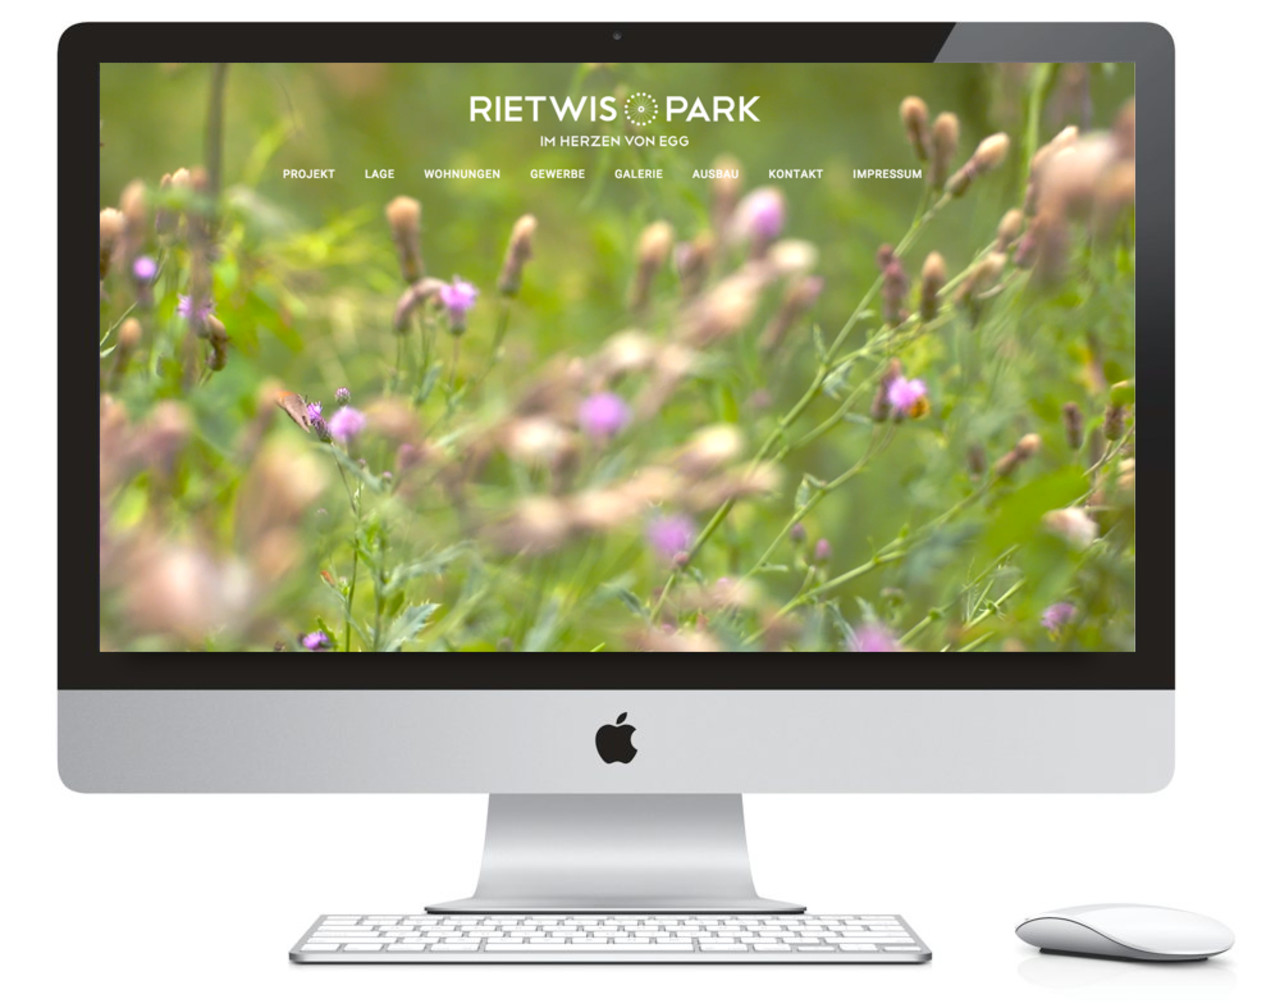 Rietwis Park Website